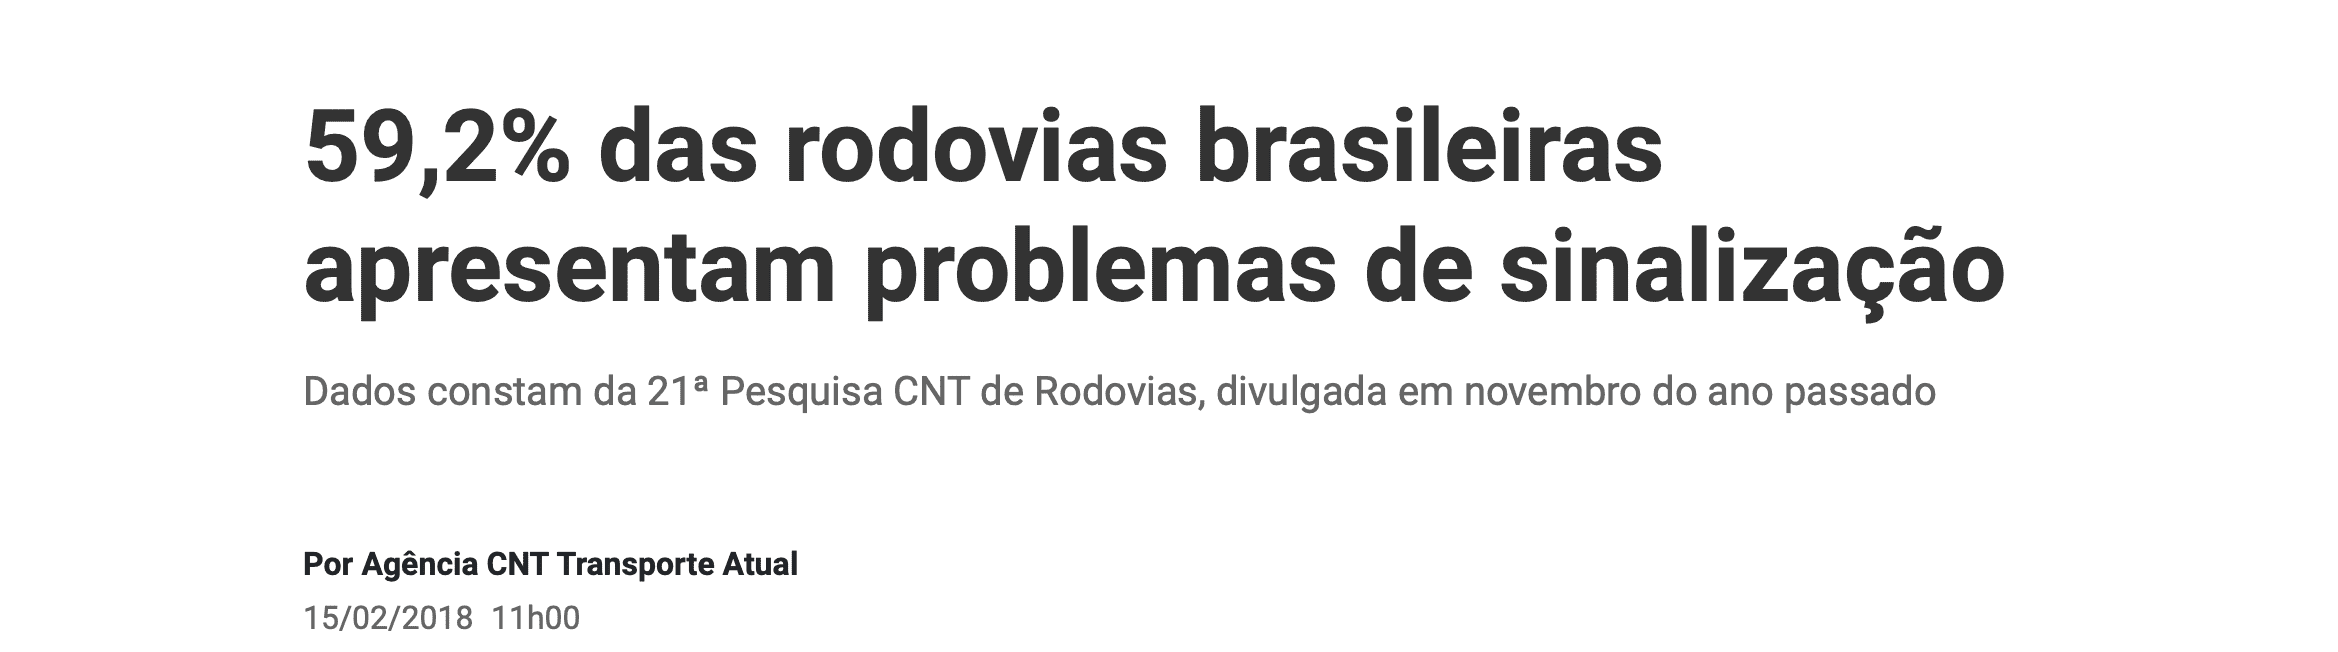 notícia sobre problemas de sinalização em rodovias brasileiras